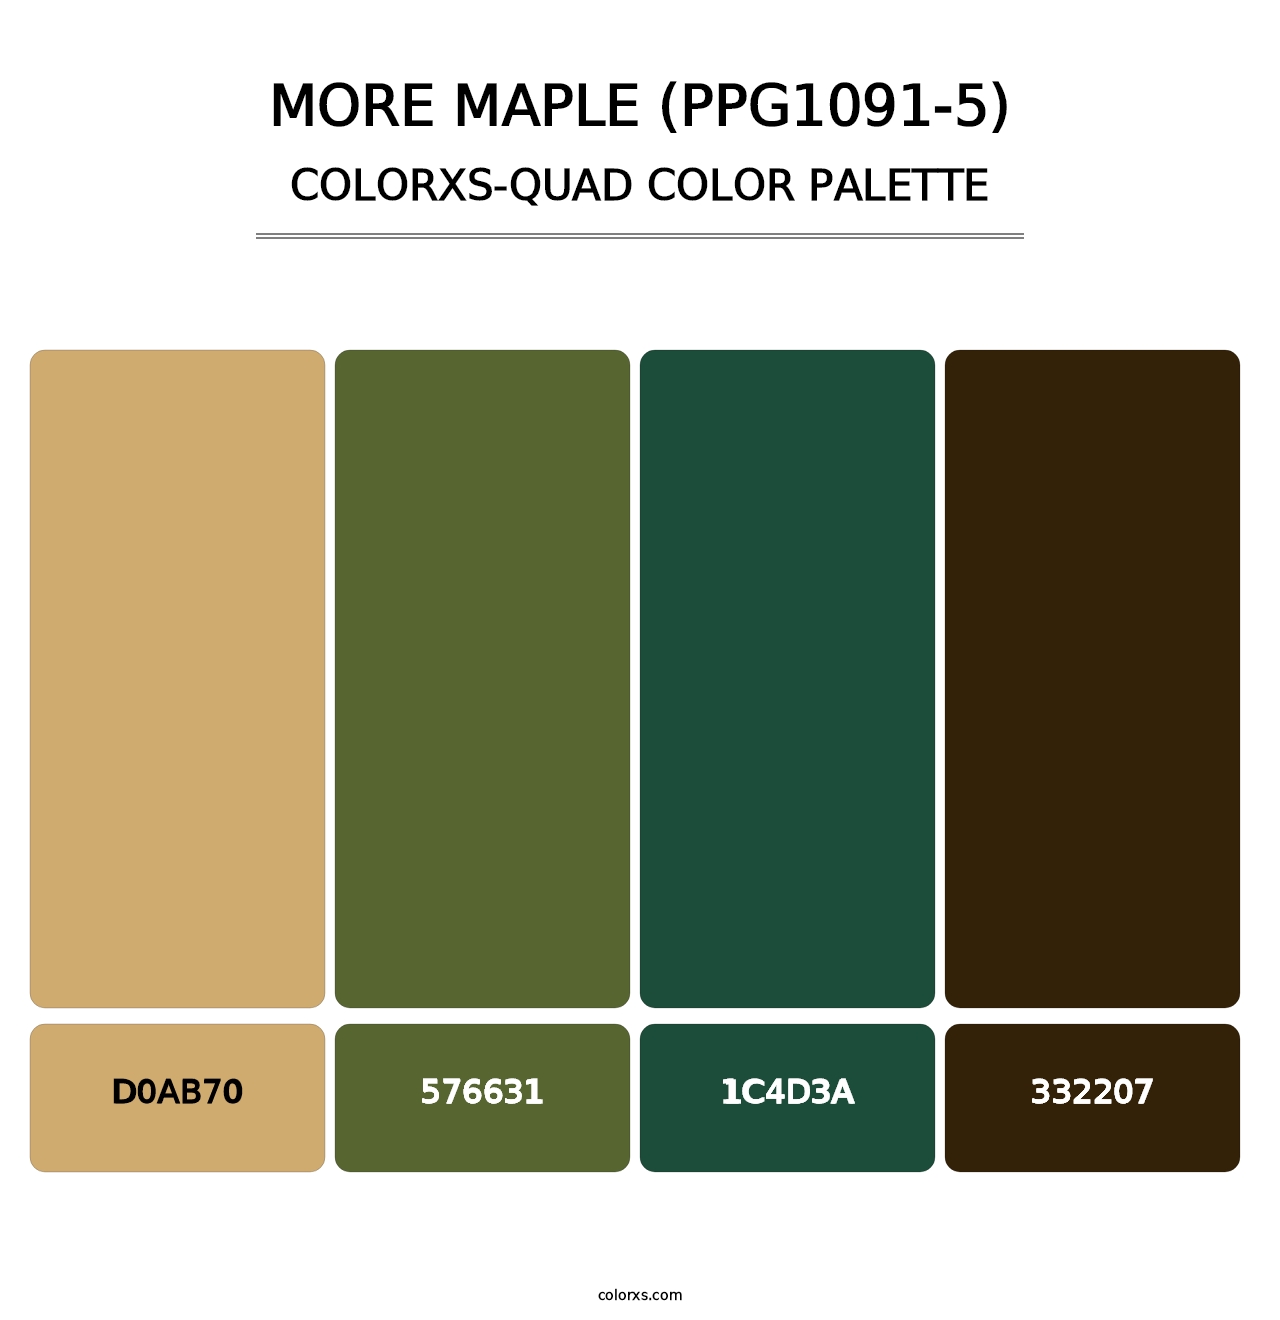 More Maple (PPG1091-5) - Colorxs Quad Palette